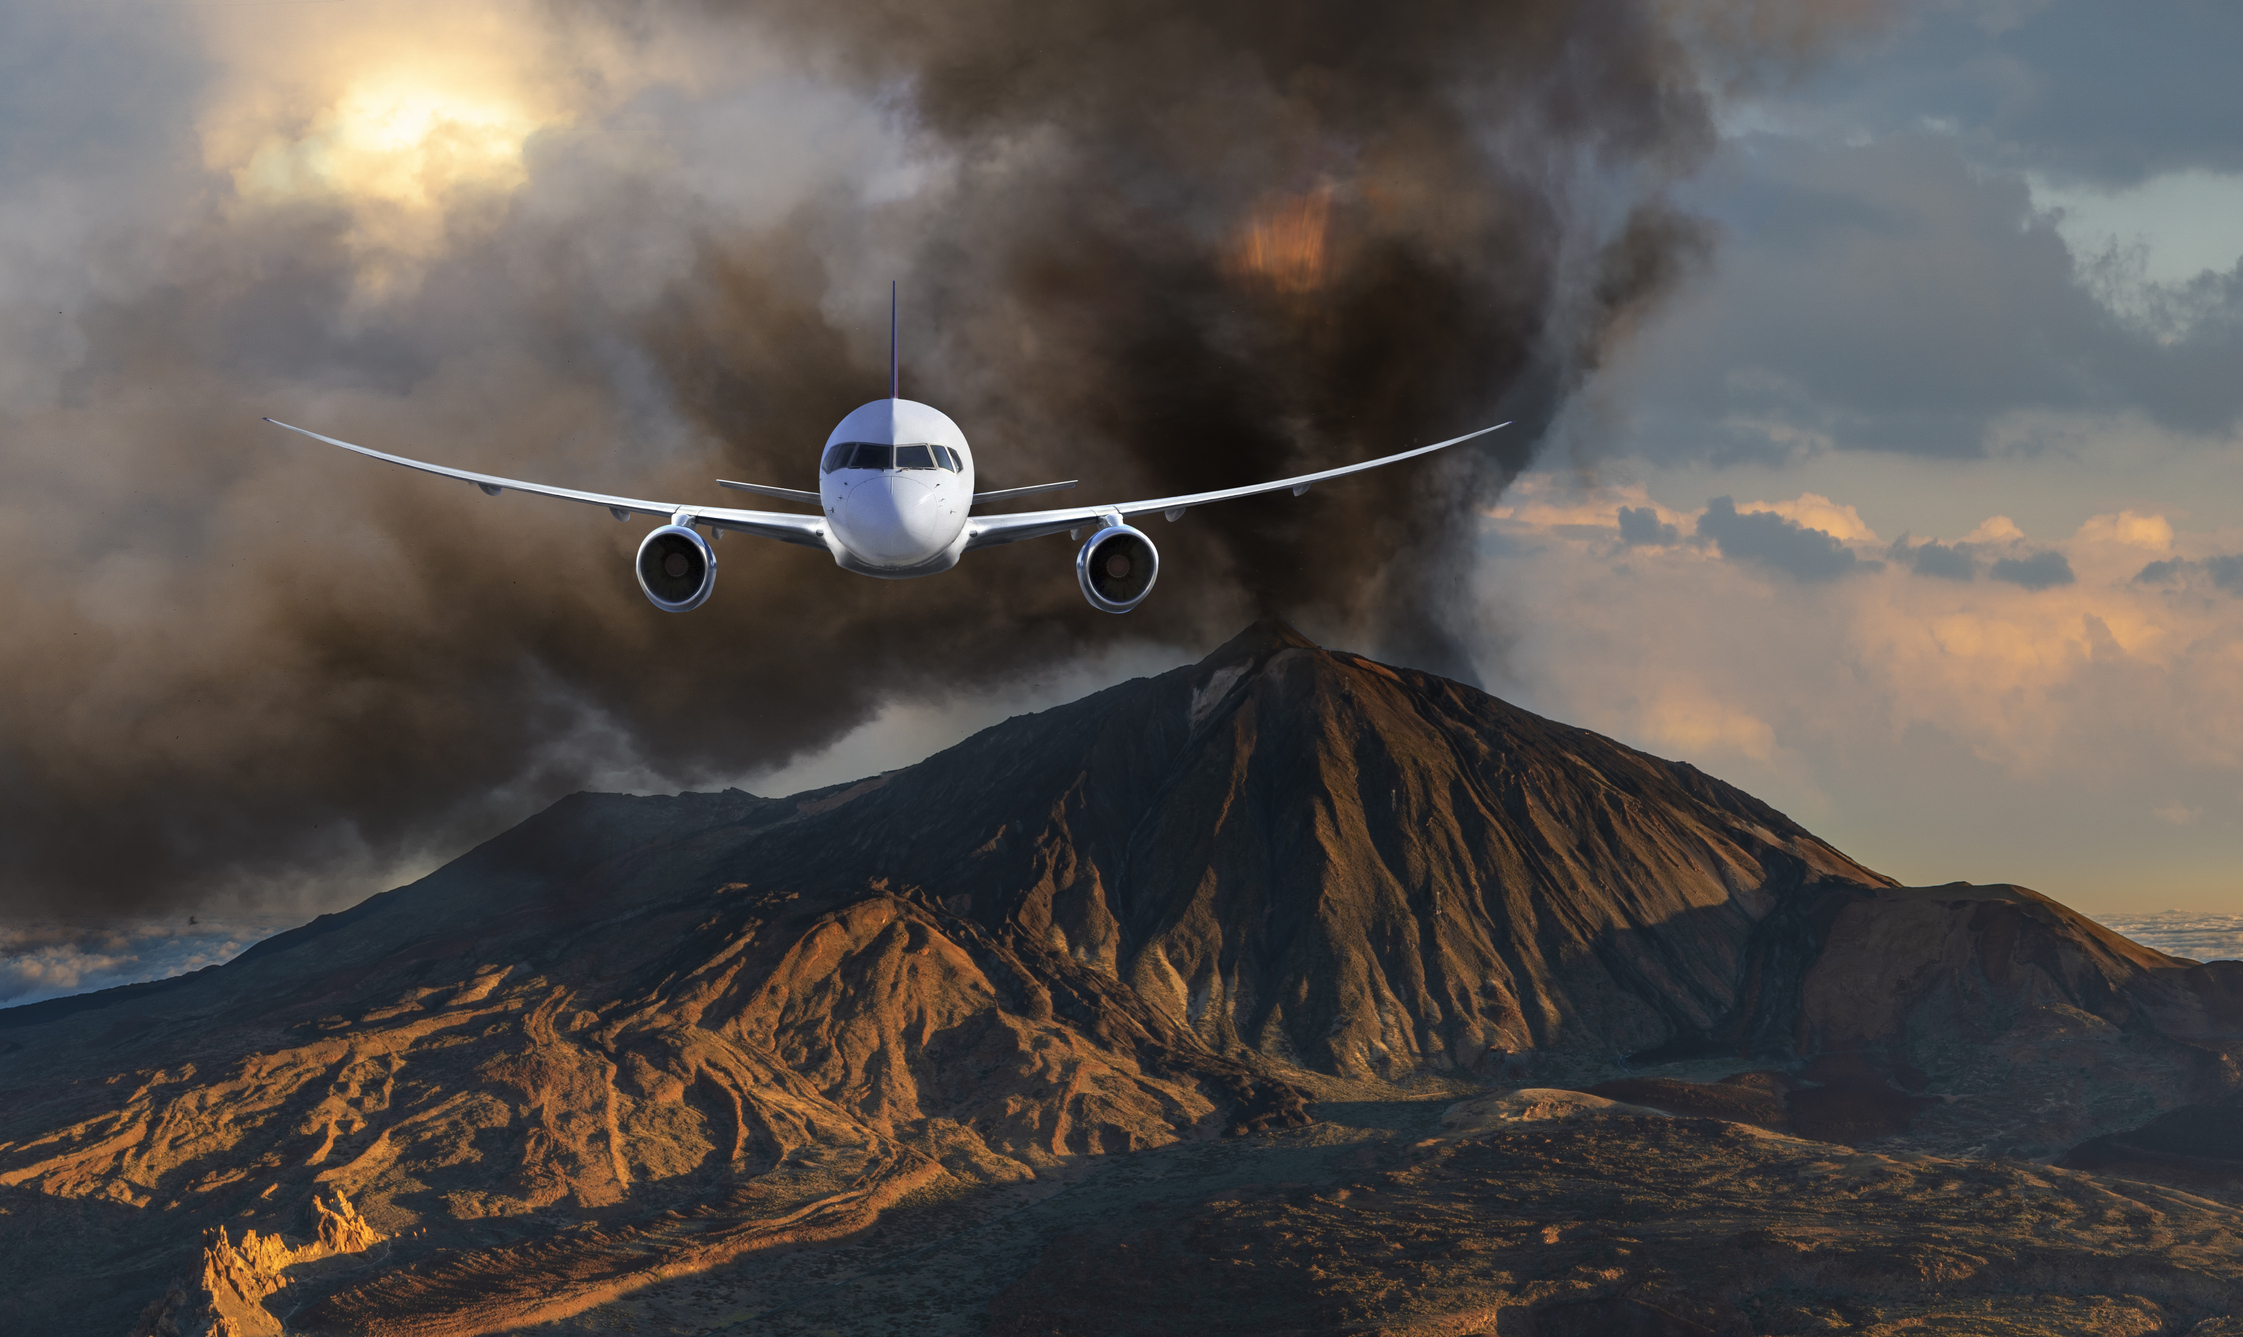 Ein Flugzeug fliegt auf die Kamera zu, im Hintergrund sind eine Aschewolke und Vulkanlandschaft zu sehen.